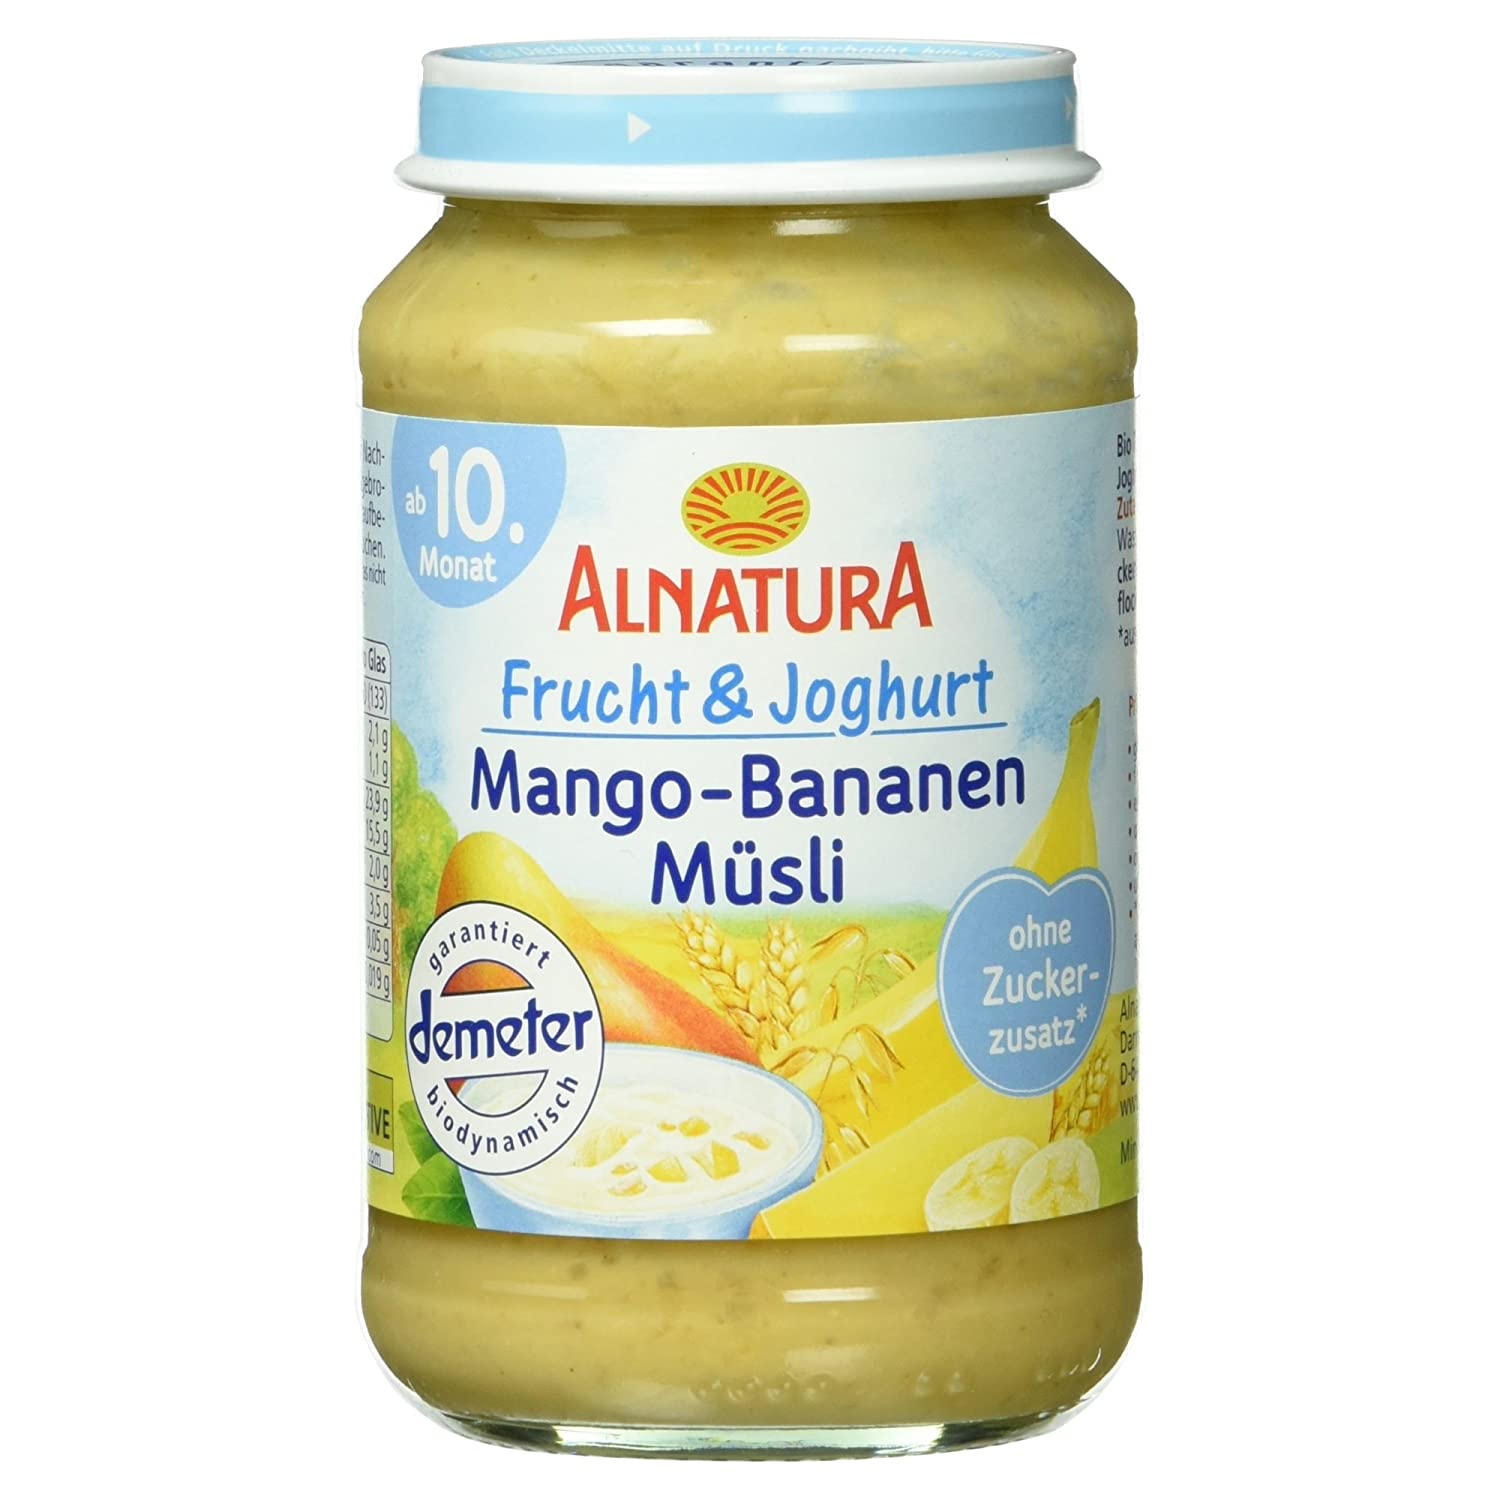 Alnatura Bio Frucht und Joghurt Mango-Bananen-Müsli, ab 10. Monat, 190g